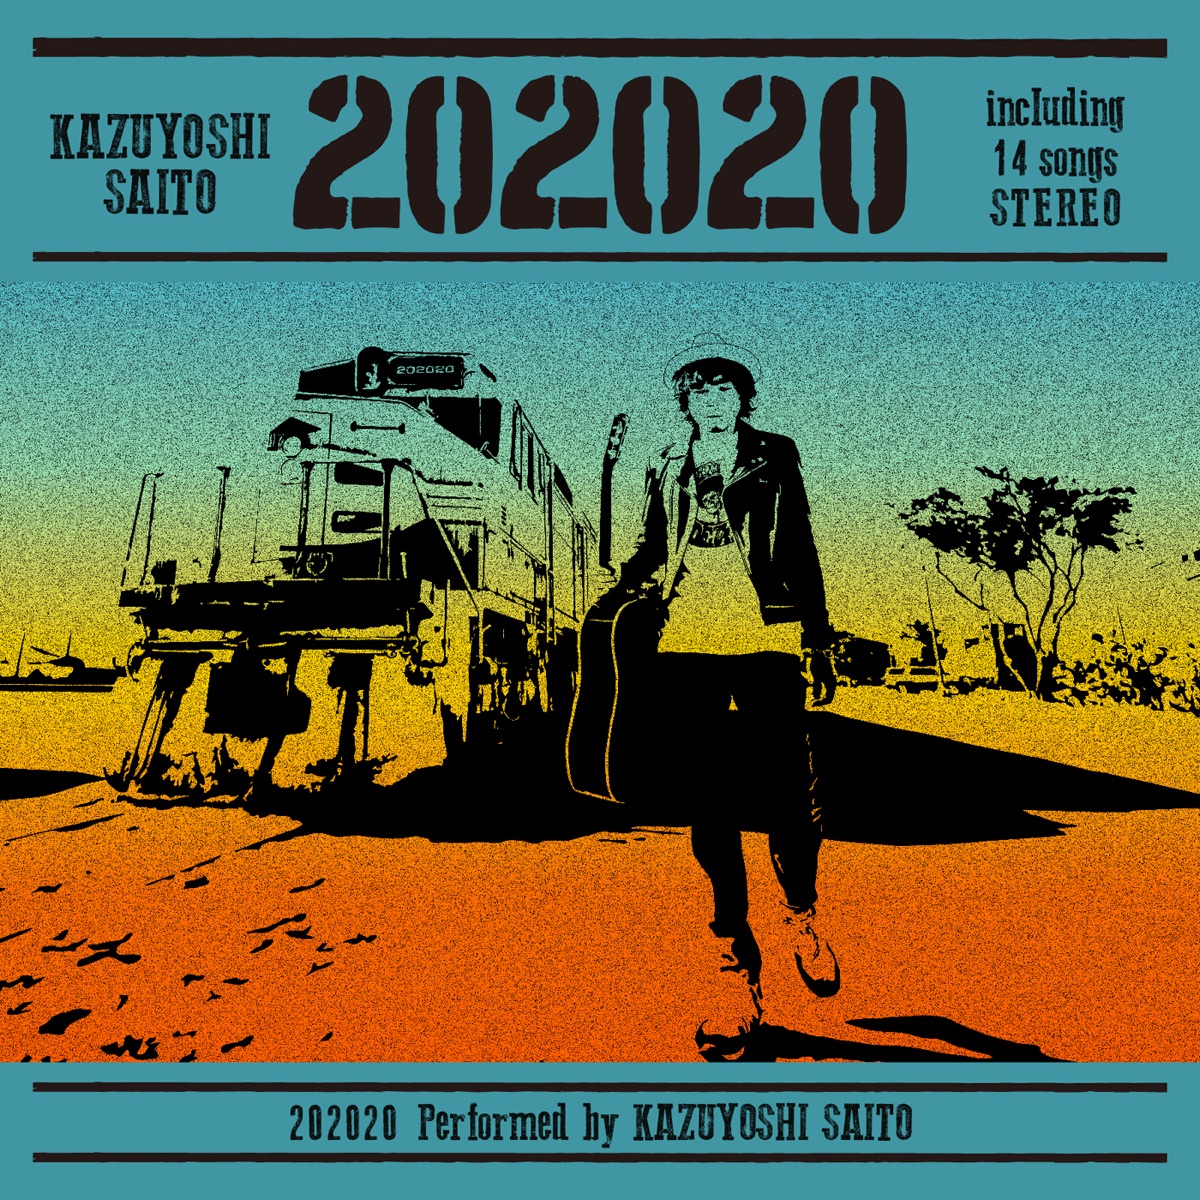 『斉藤和義 - 万事休す 歌詞』収録の『202020』ジャケット